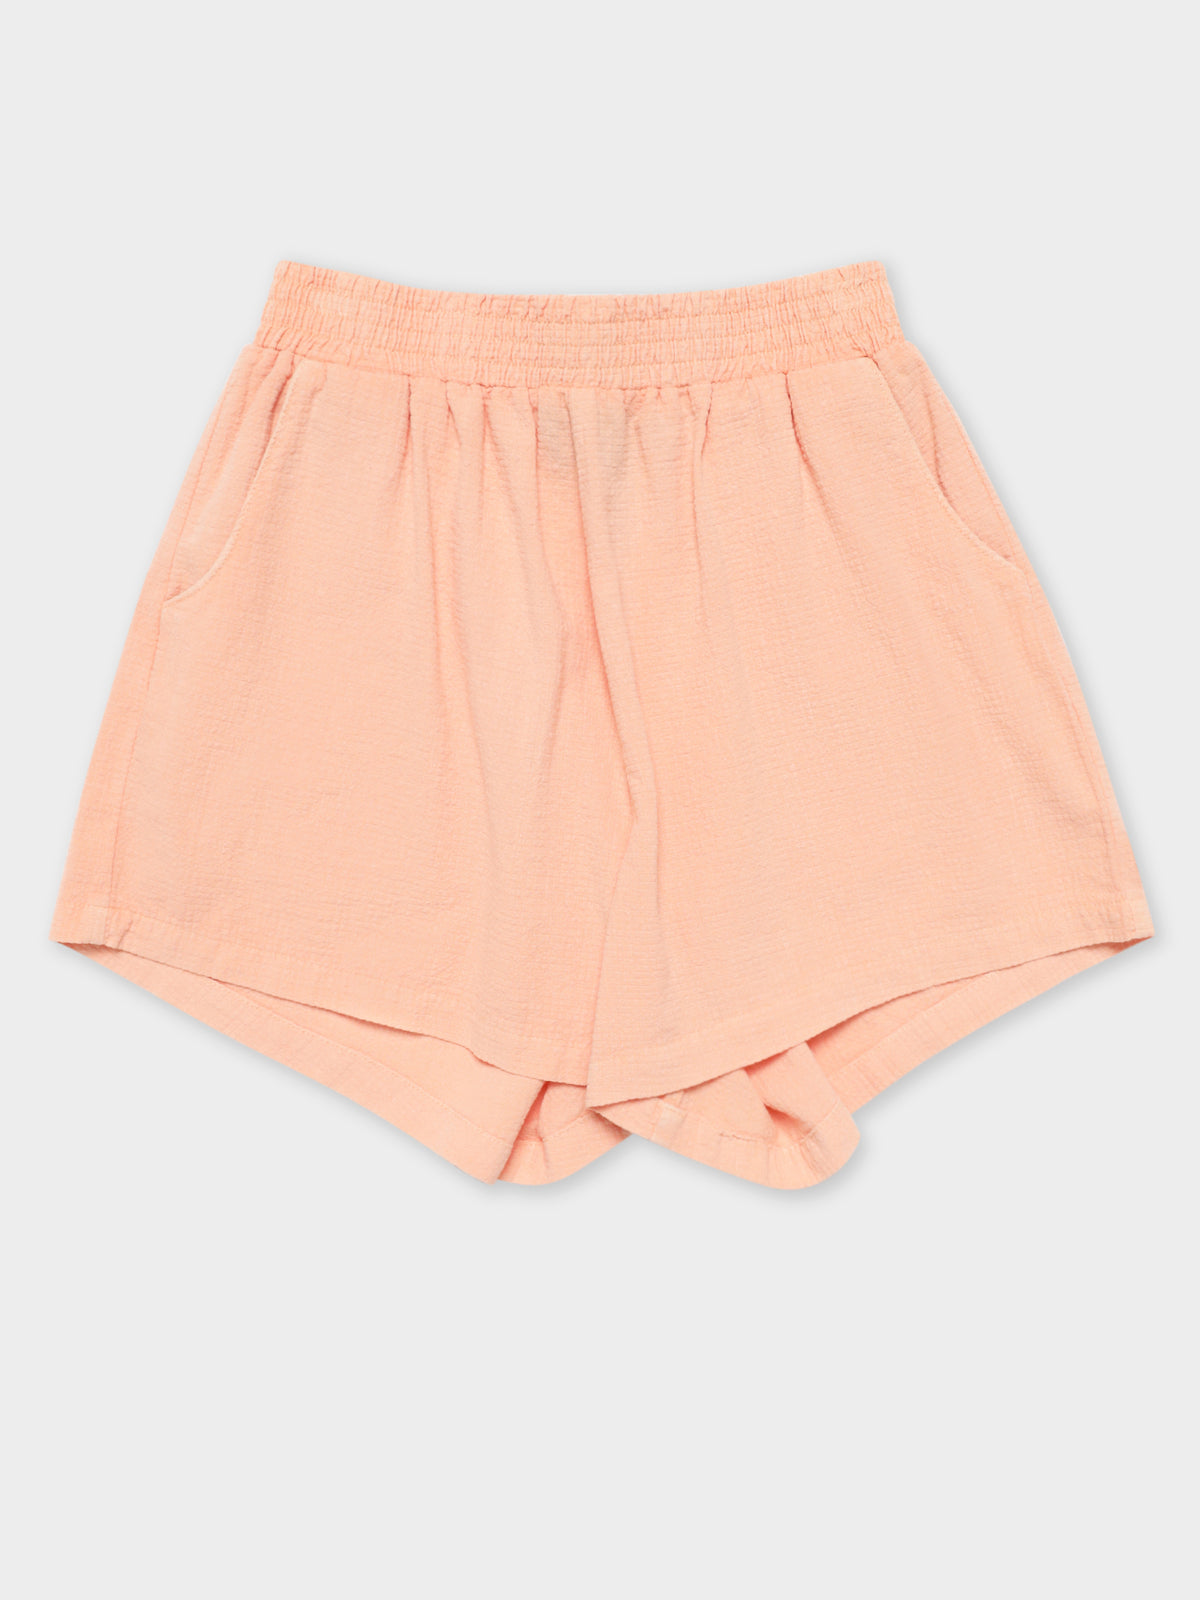 Vermont HW Shorts in Peach